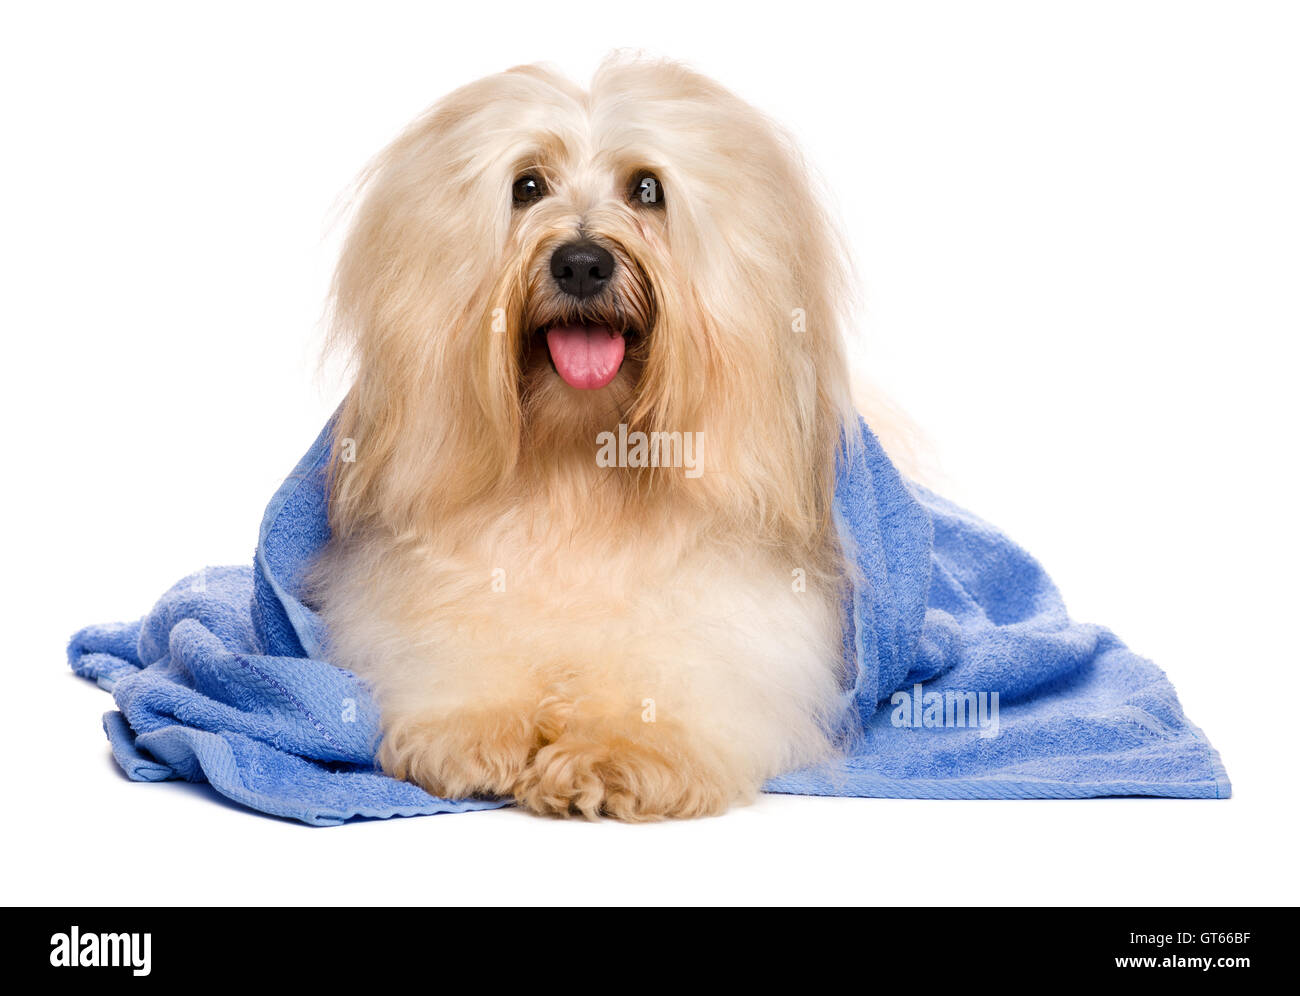 Bella rossastro cane havanese dopo il bagno giacente in un asciugamano blu Foto Stock